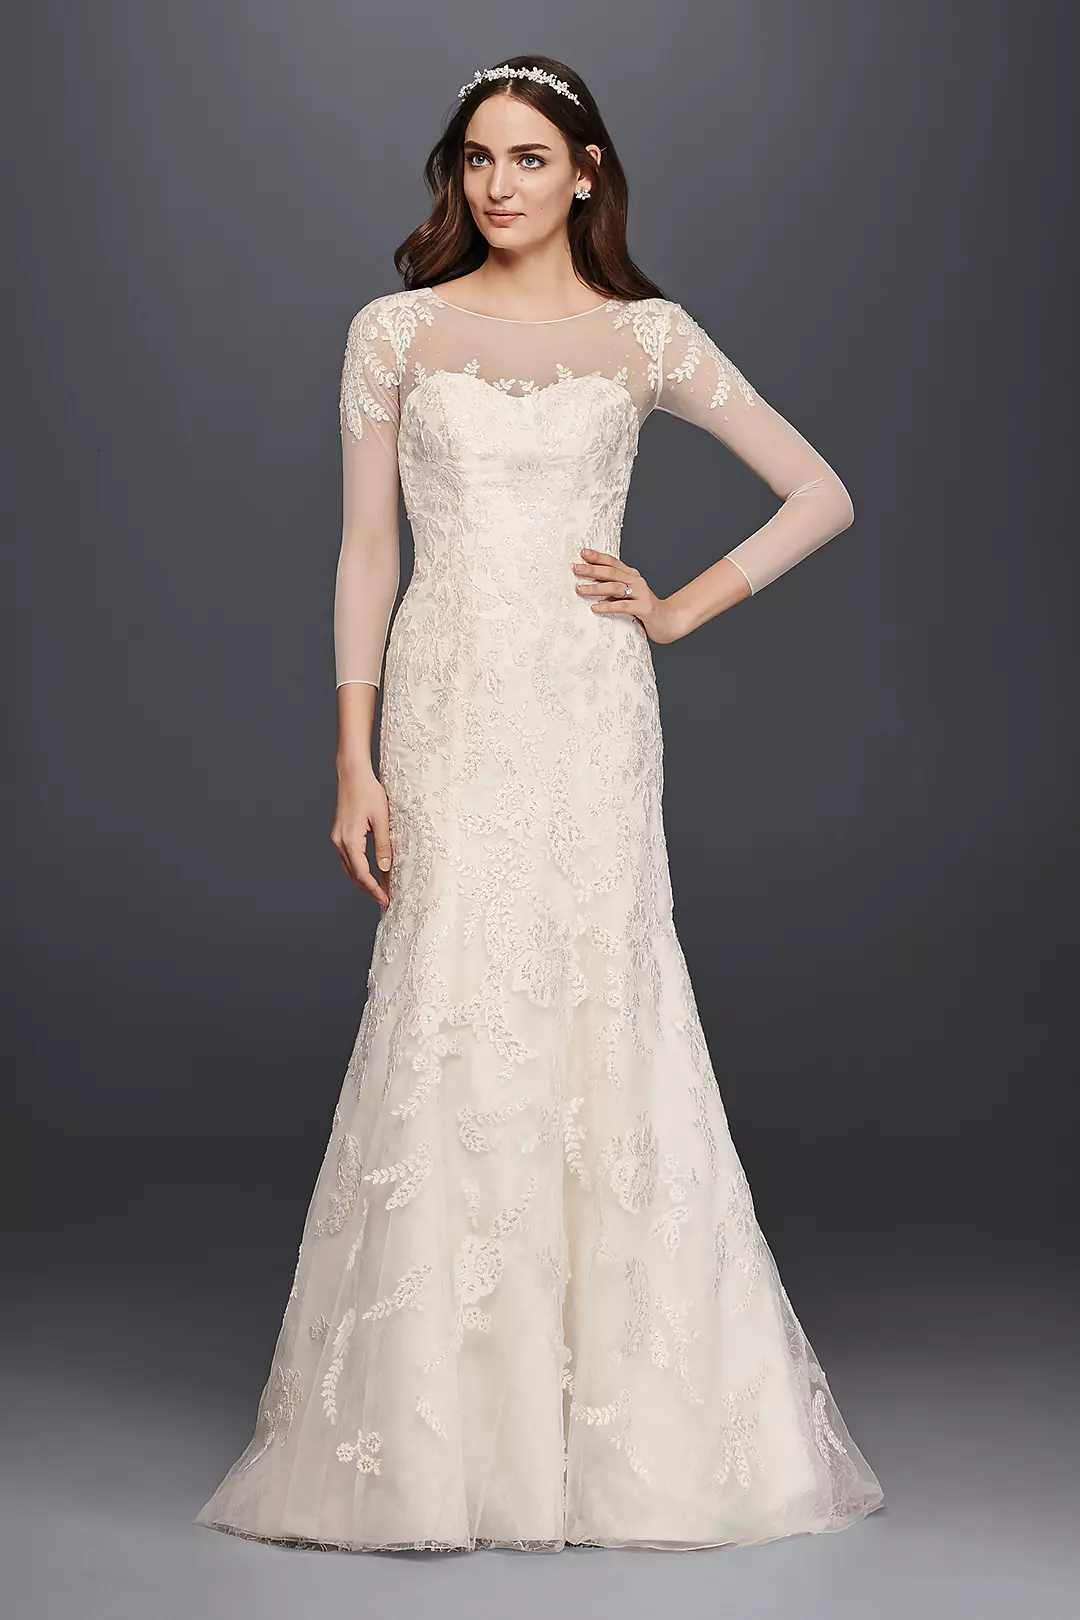 Oleg Cassini Lace Wedding Dress with 3/4 Sleeves  Image